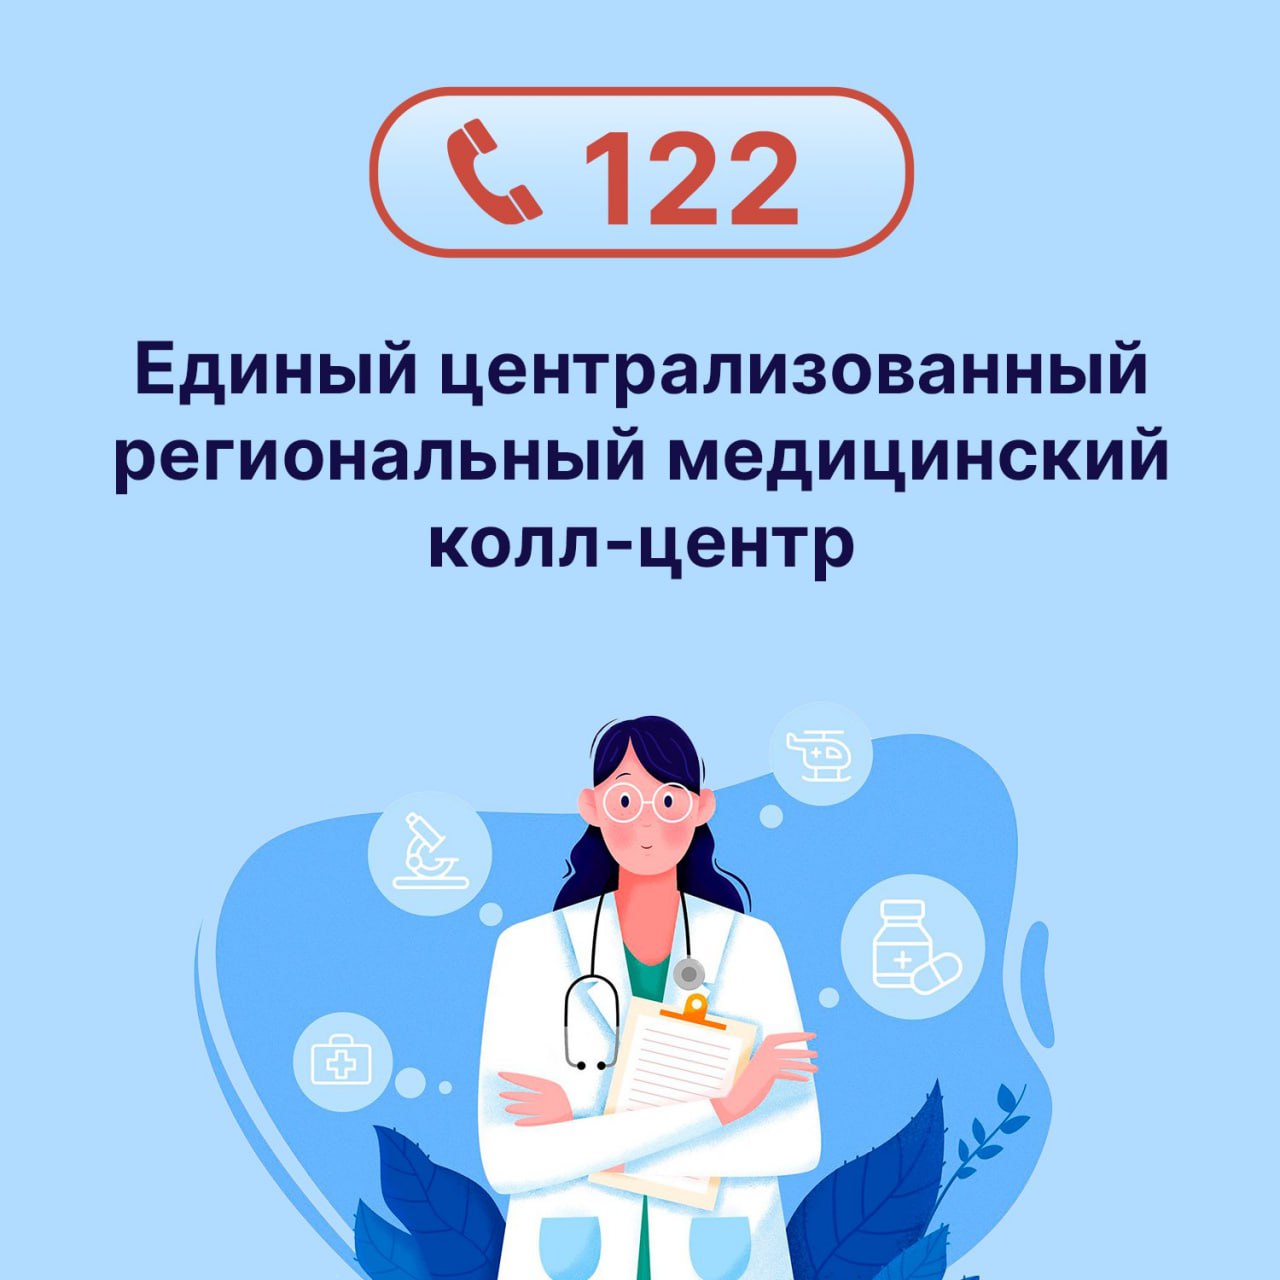 В регионе заработал Единый централизованный региональный медицинский колл-центр. .